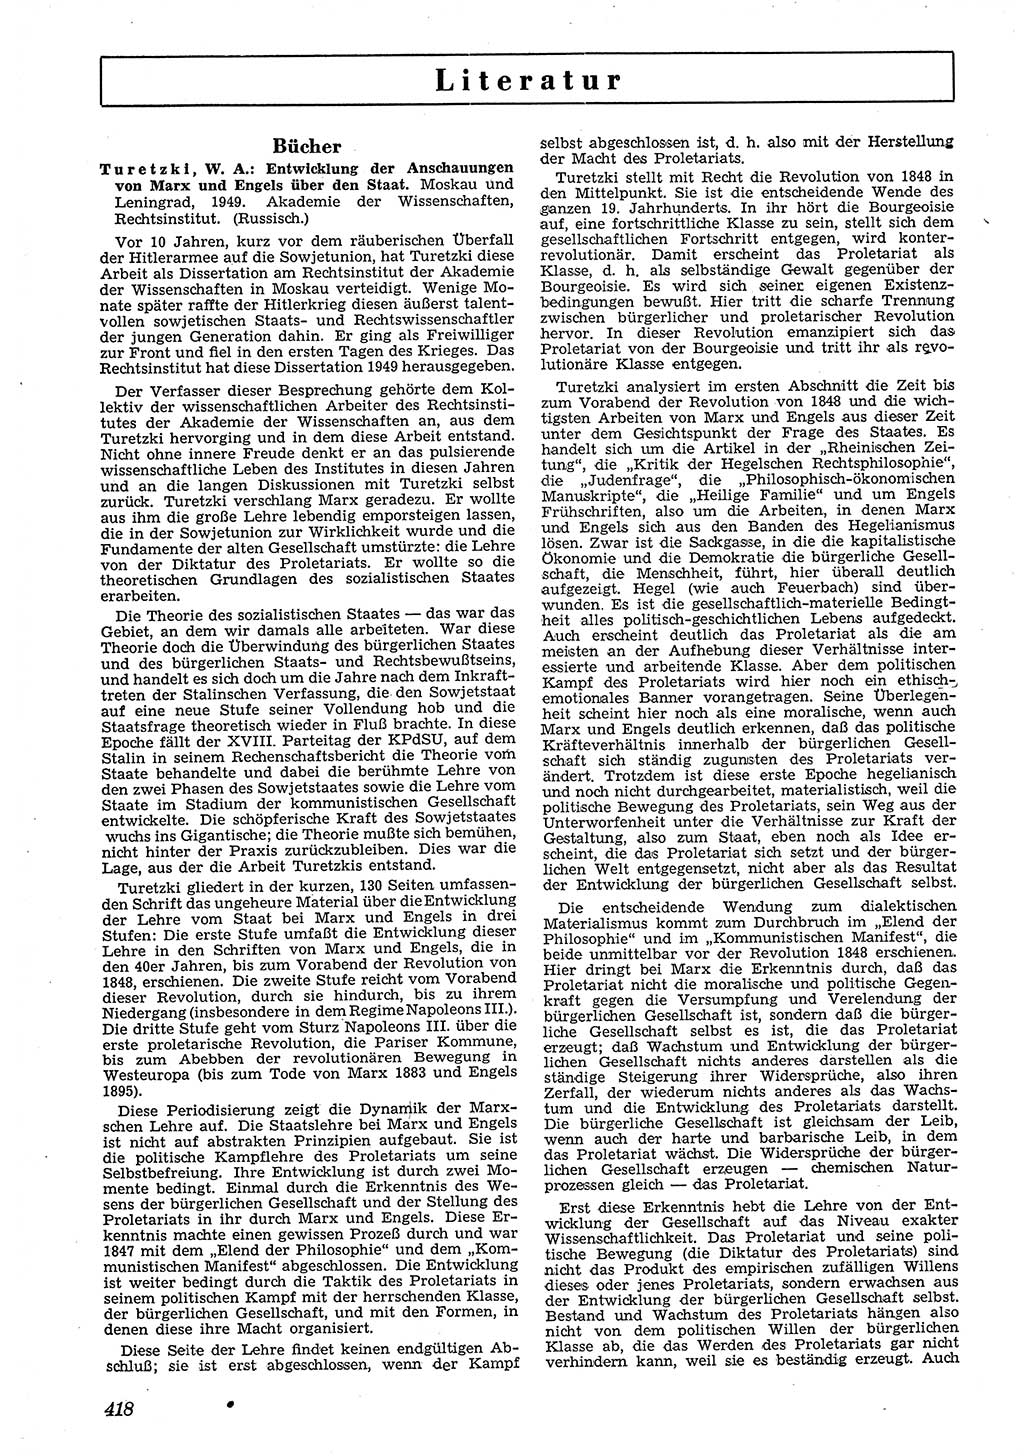 Neue Justiz (NJ), Zeitschrift für Recht und Rechtswissenschaft [Deutsche Demokratische Republik (DDR)], 4. Jahrgang 1950, Seite 418 (NJ DDR 1950, S. 418)